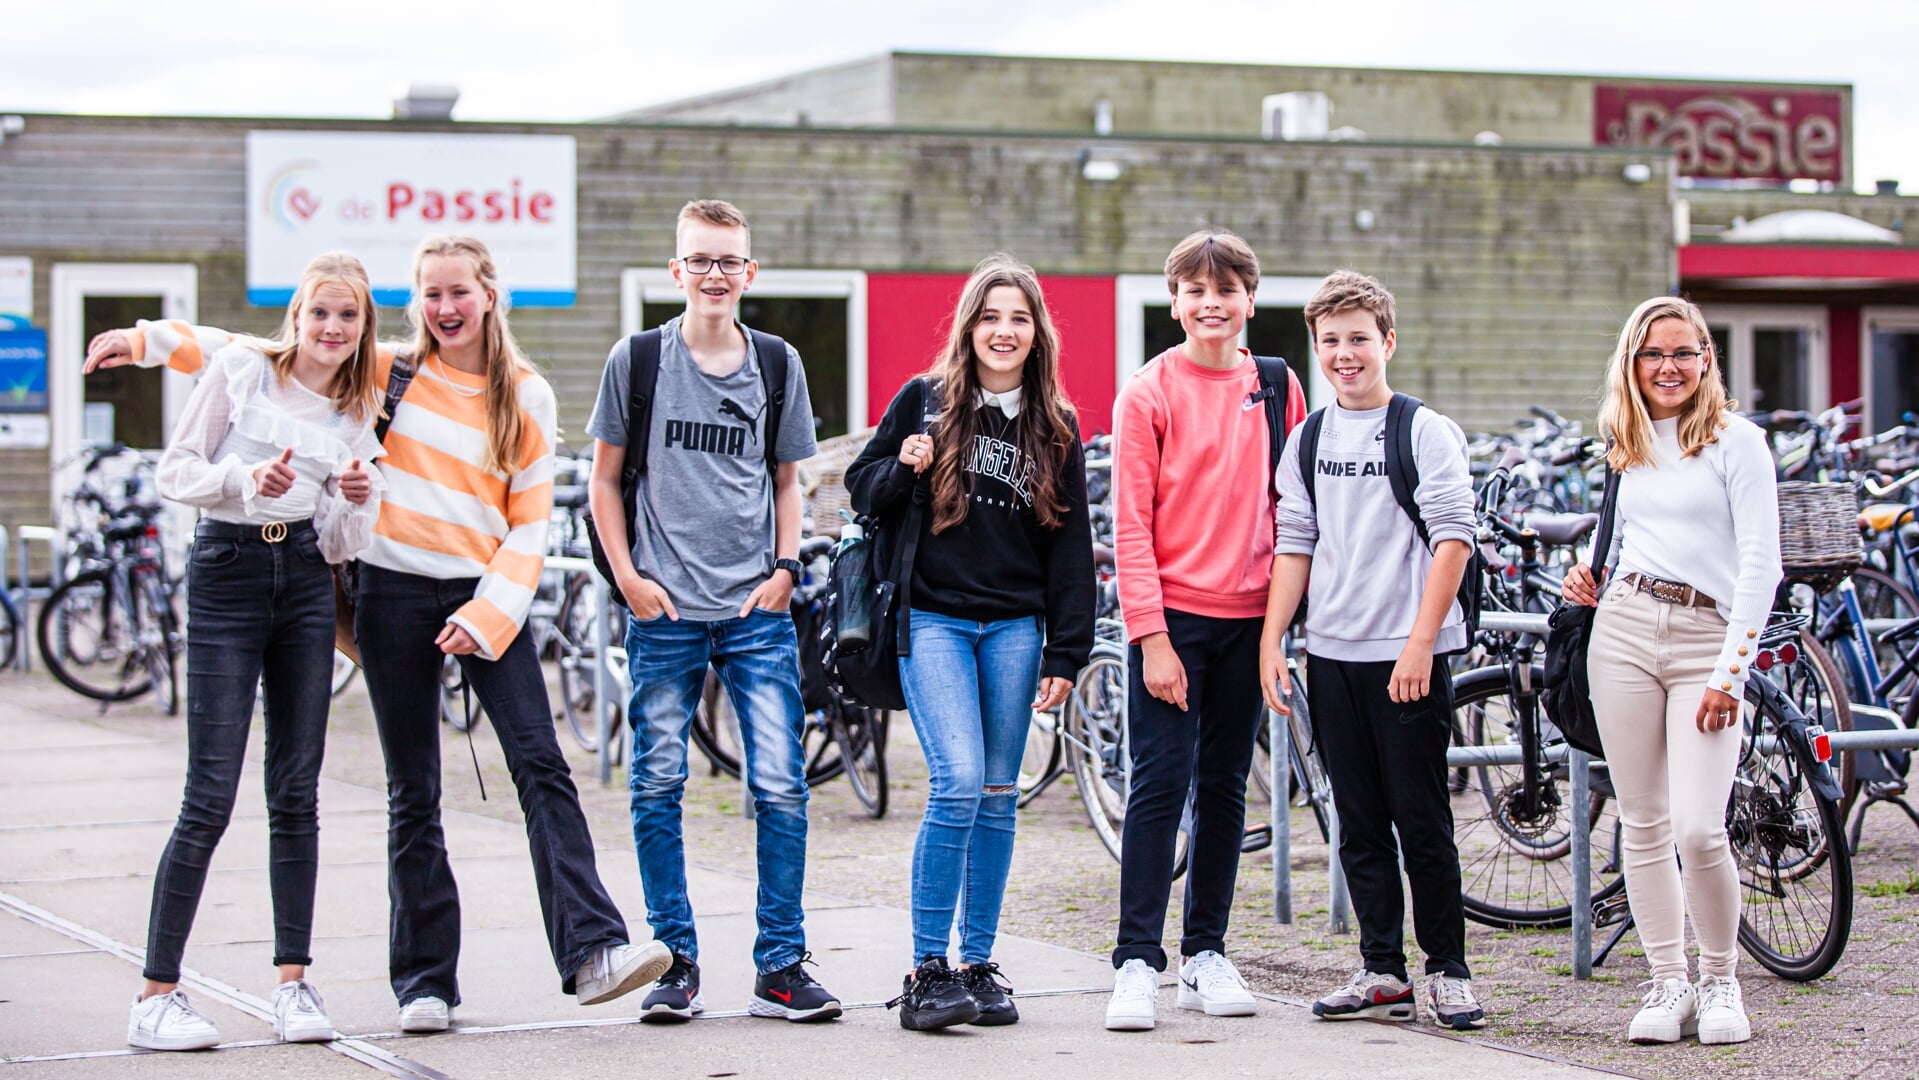 De Passie in Wierden heeft iets minder dan 700 leerlingen en is daarmee een kleinschalige school te noemen.